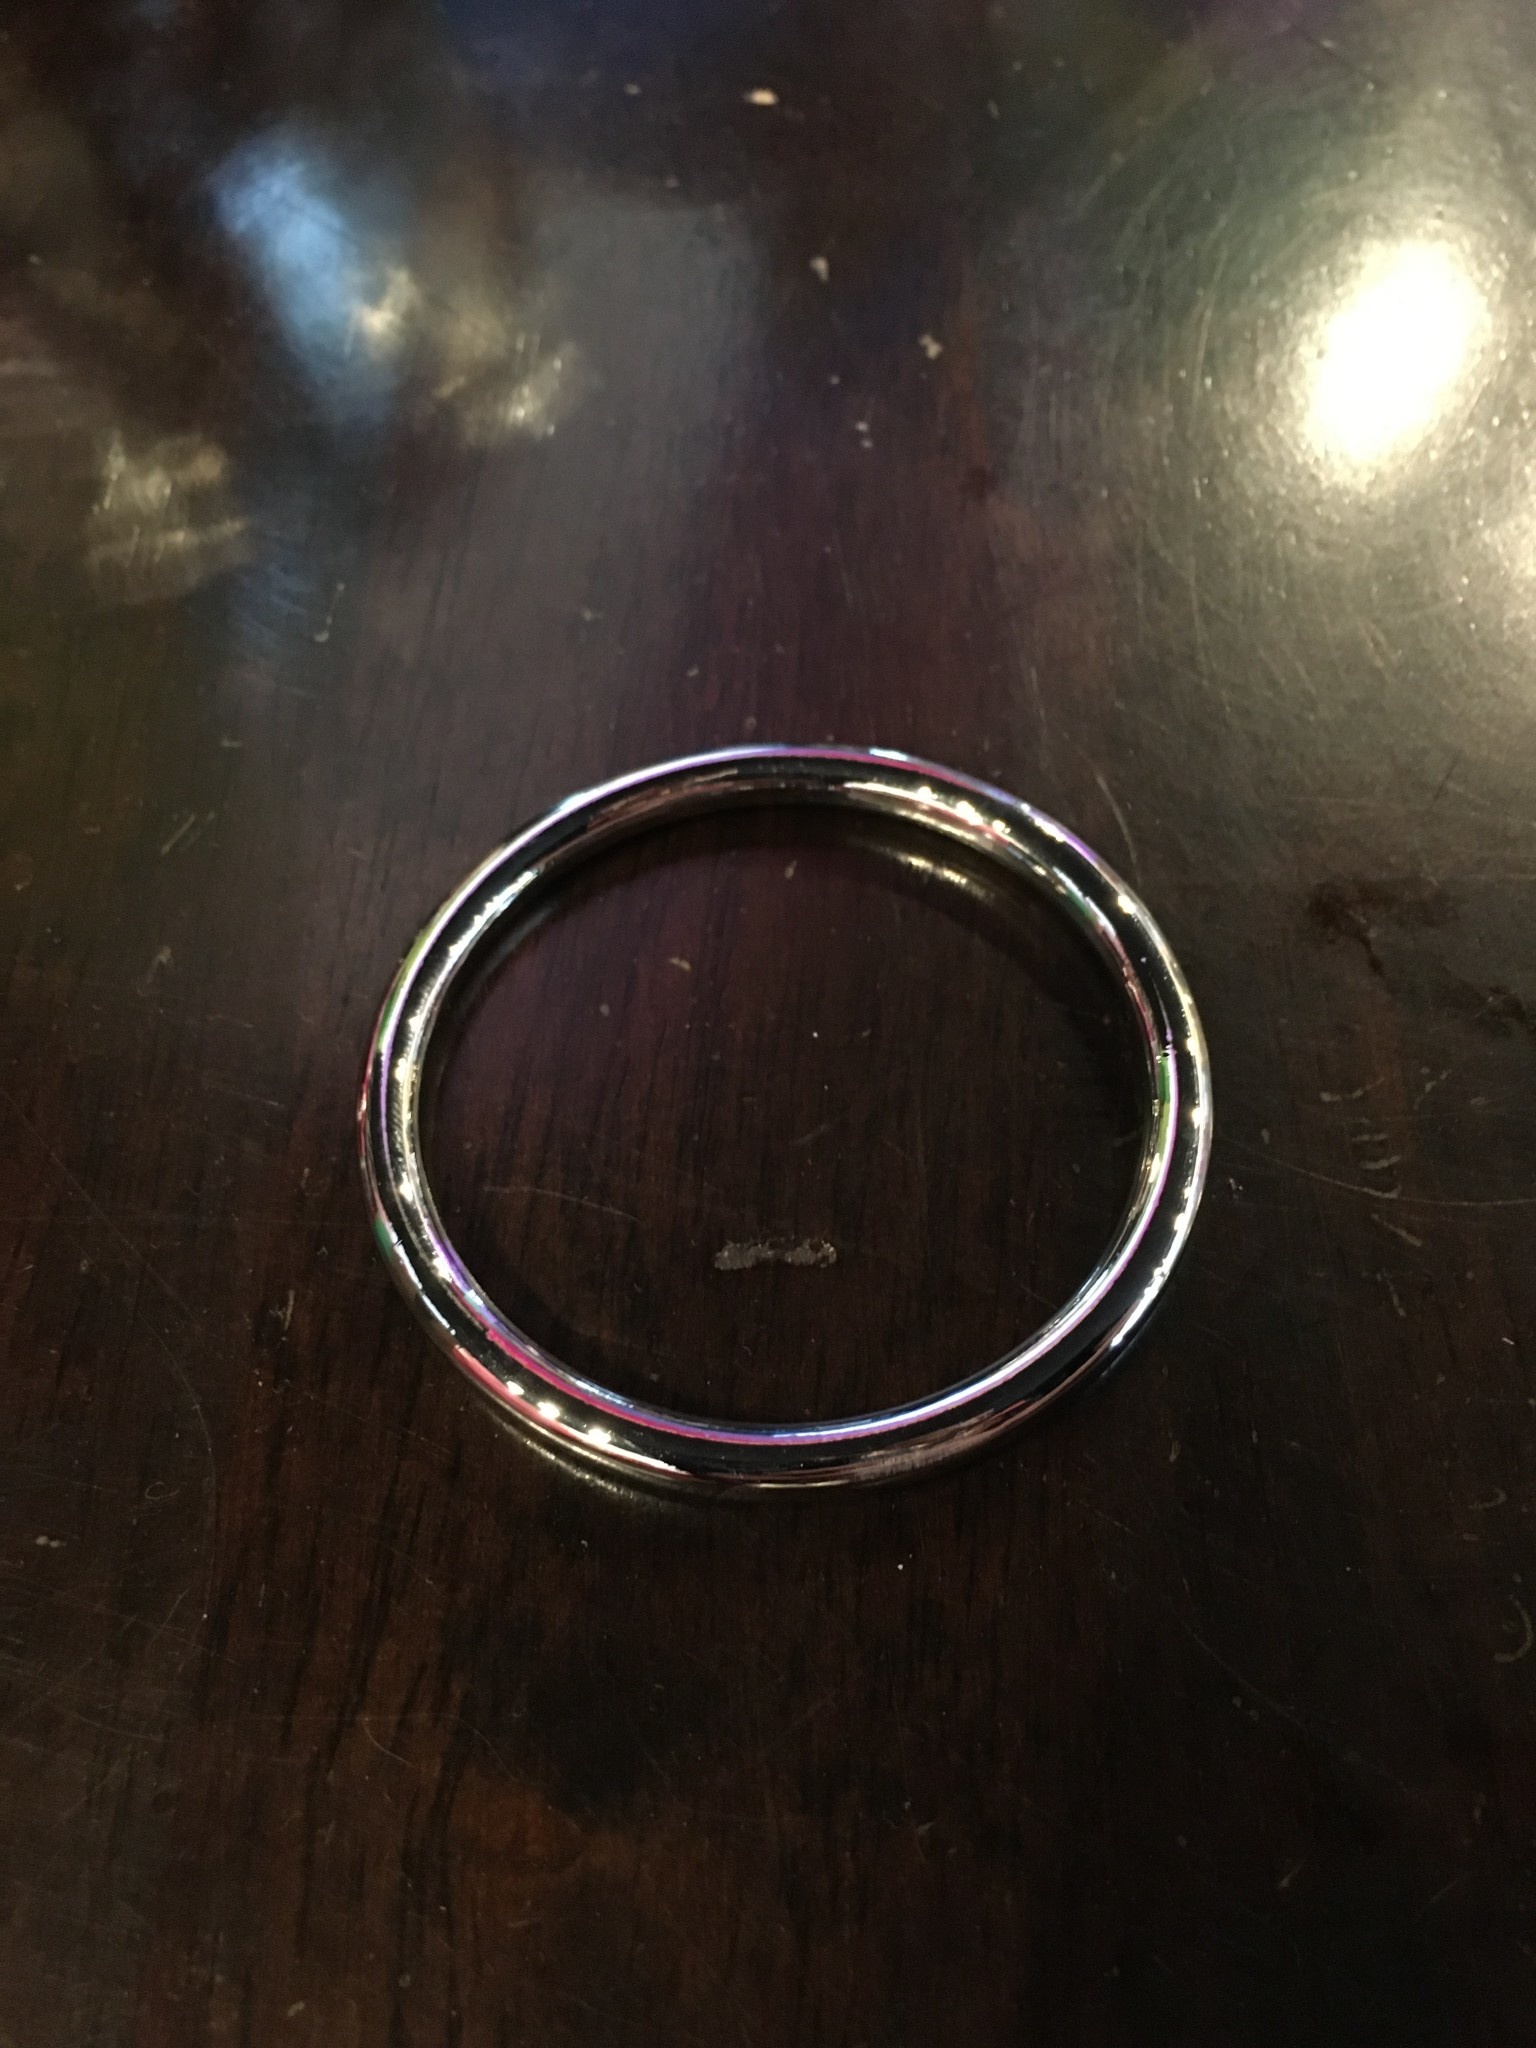 Seamless Metal Ring 2.0